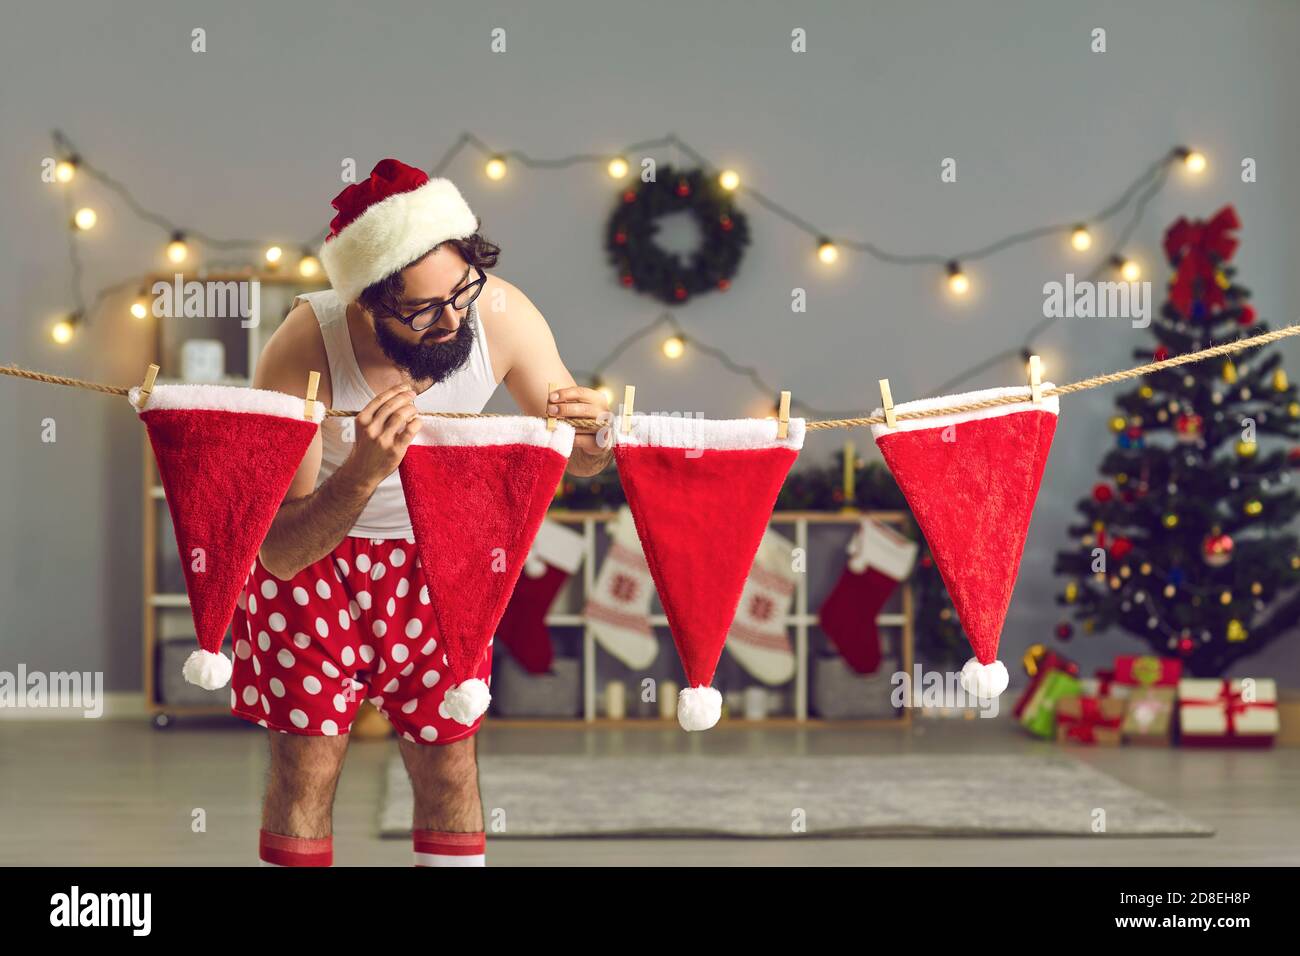 Mann im Urlaub lustige Kostüm hängen Hüte für Geschenke auf Weihnachten  Stockfotografie - Alamy